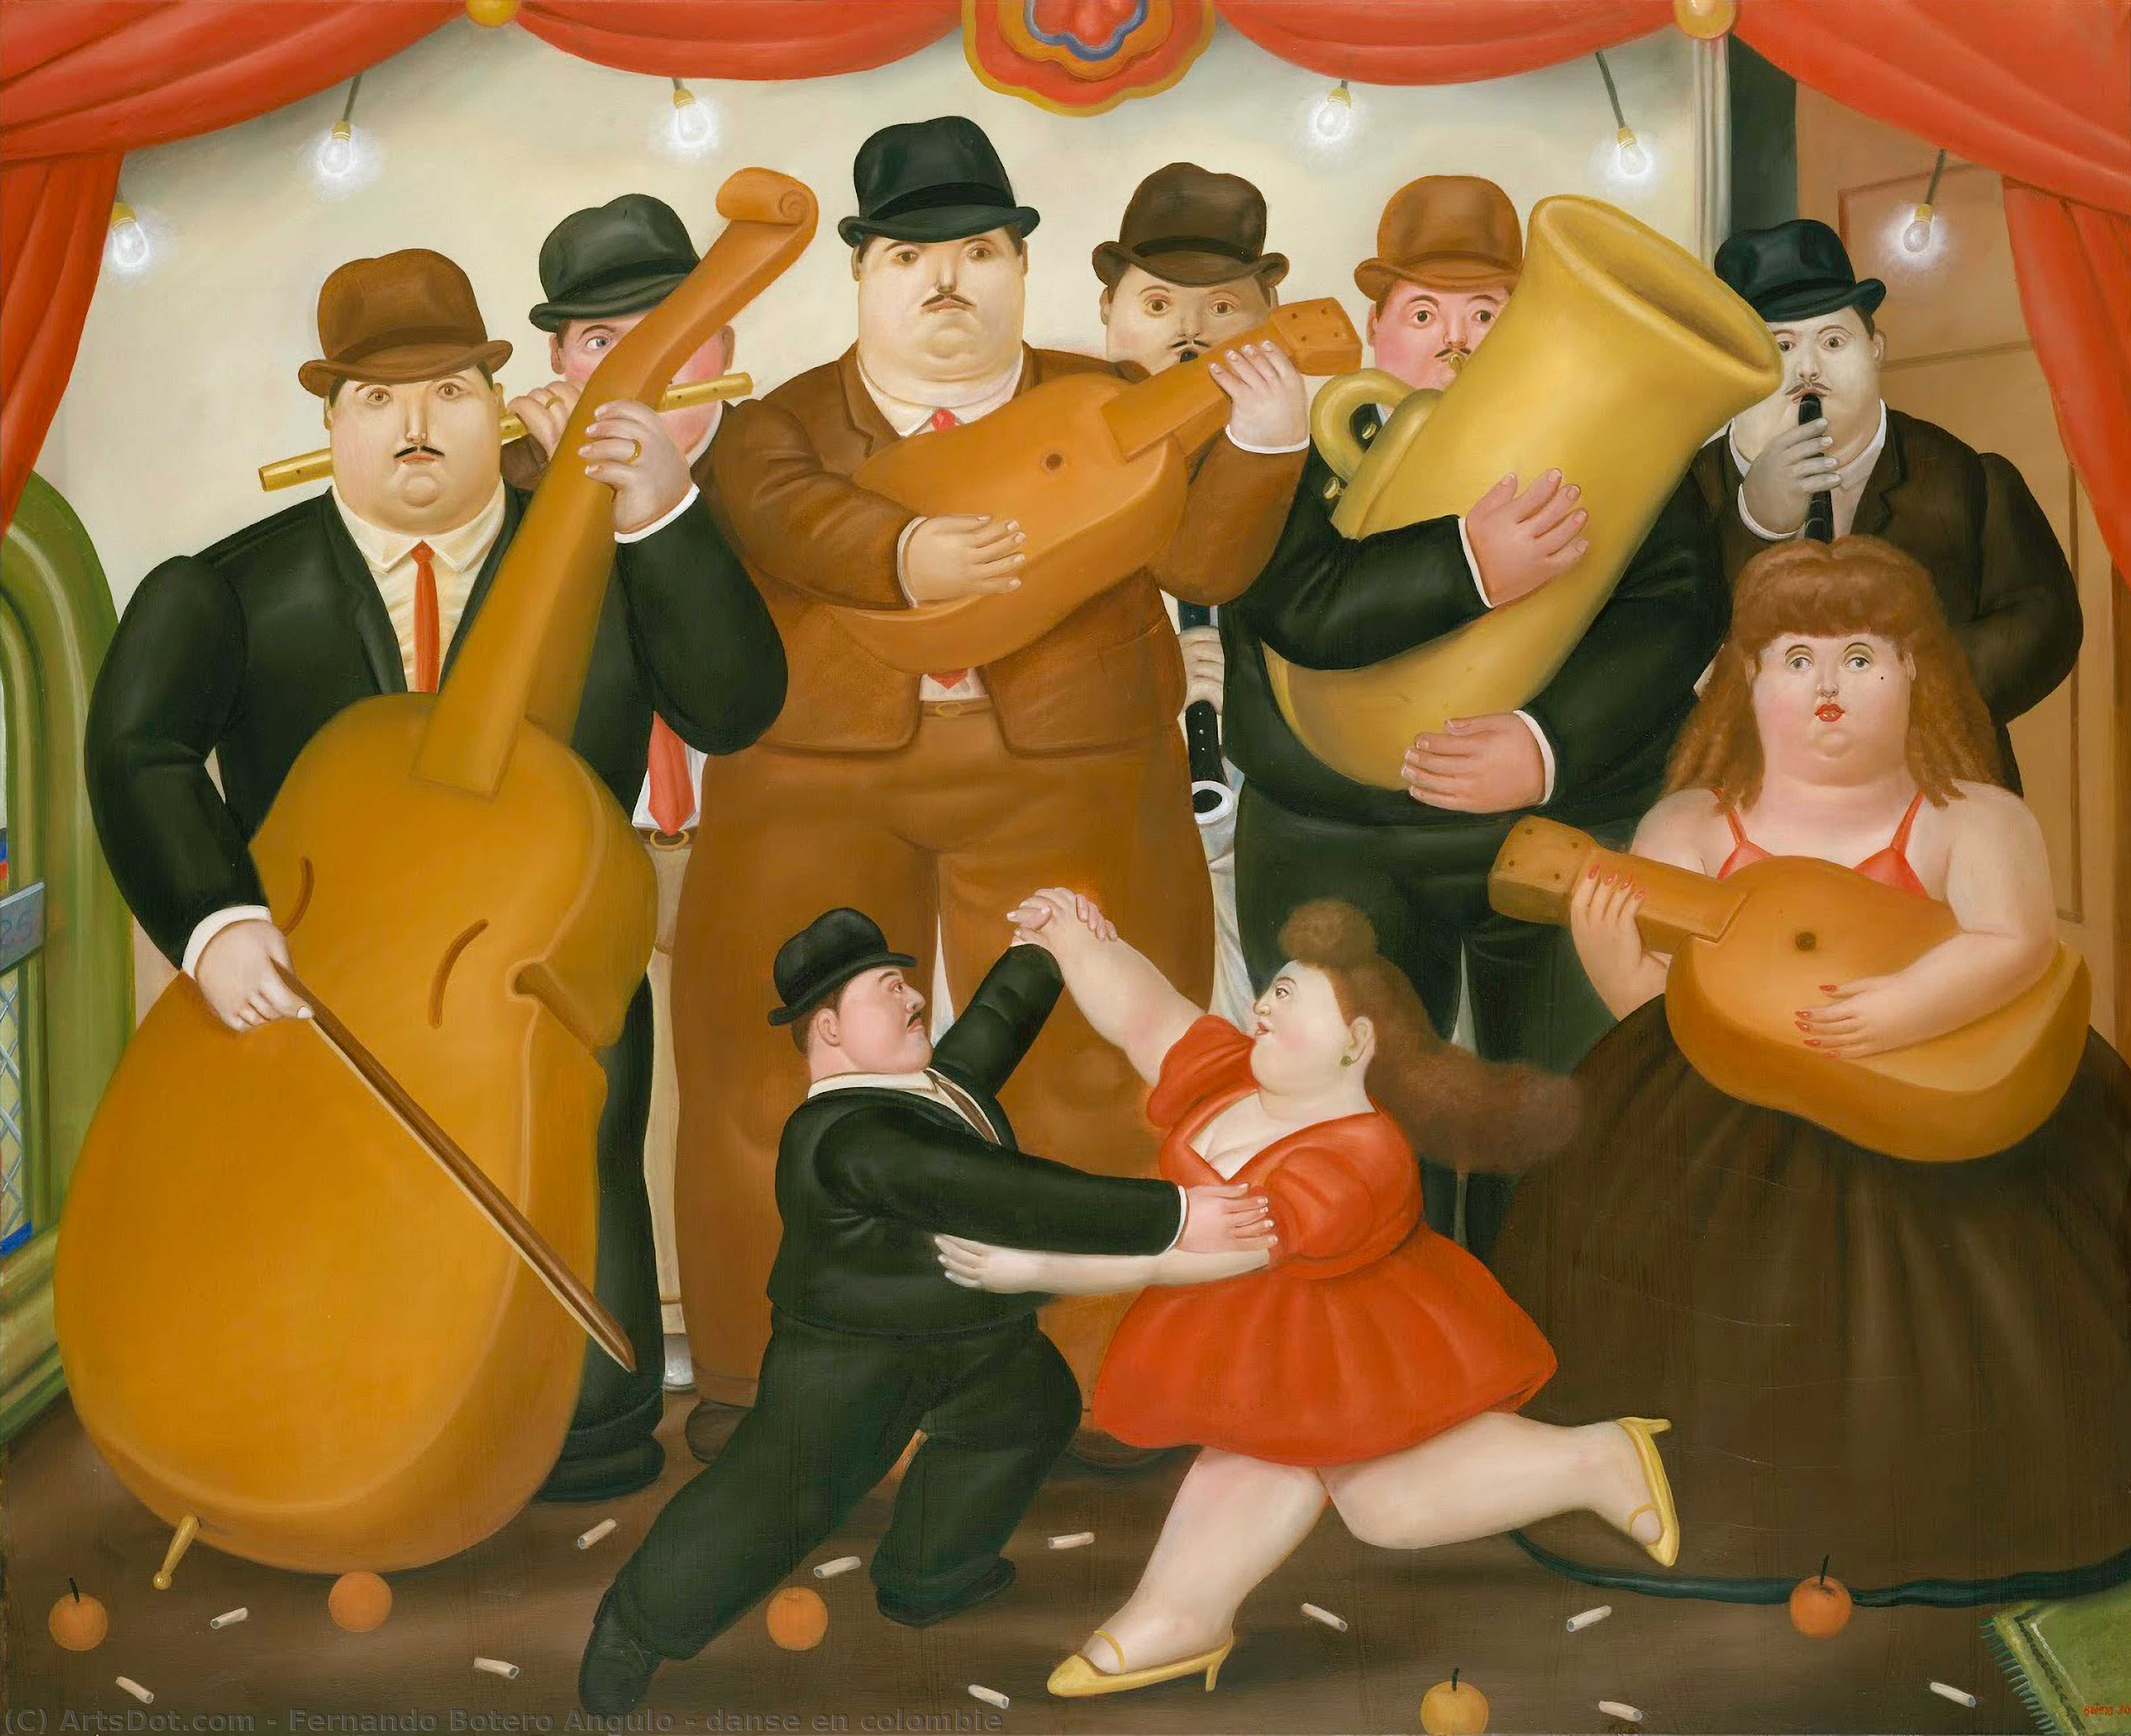 WikiOO.org - Encyclopedia of Fine Arts - Målning, konstverk Fernando Botero Angulo - danse en colombie